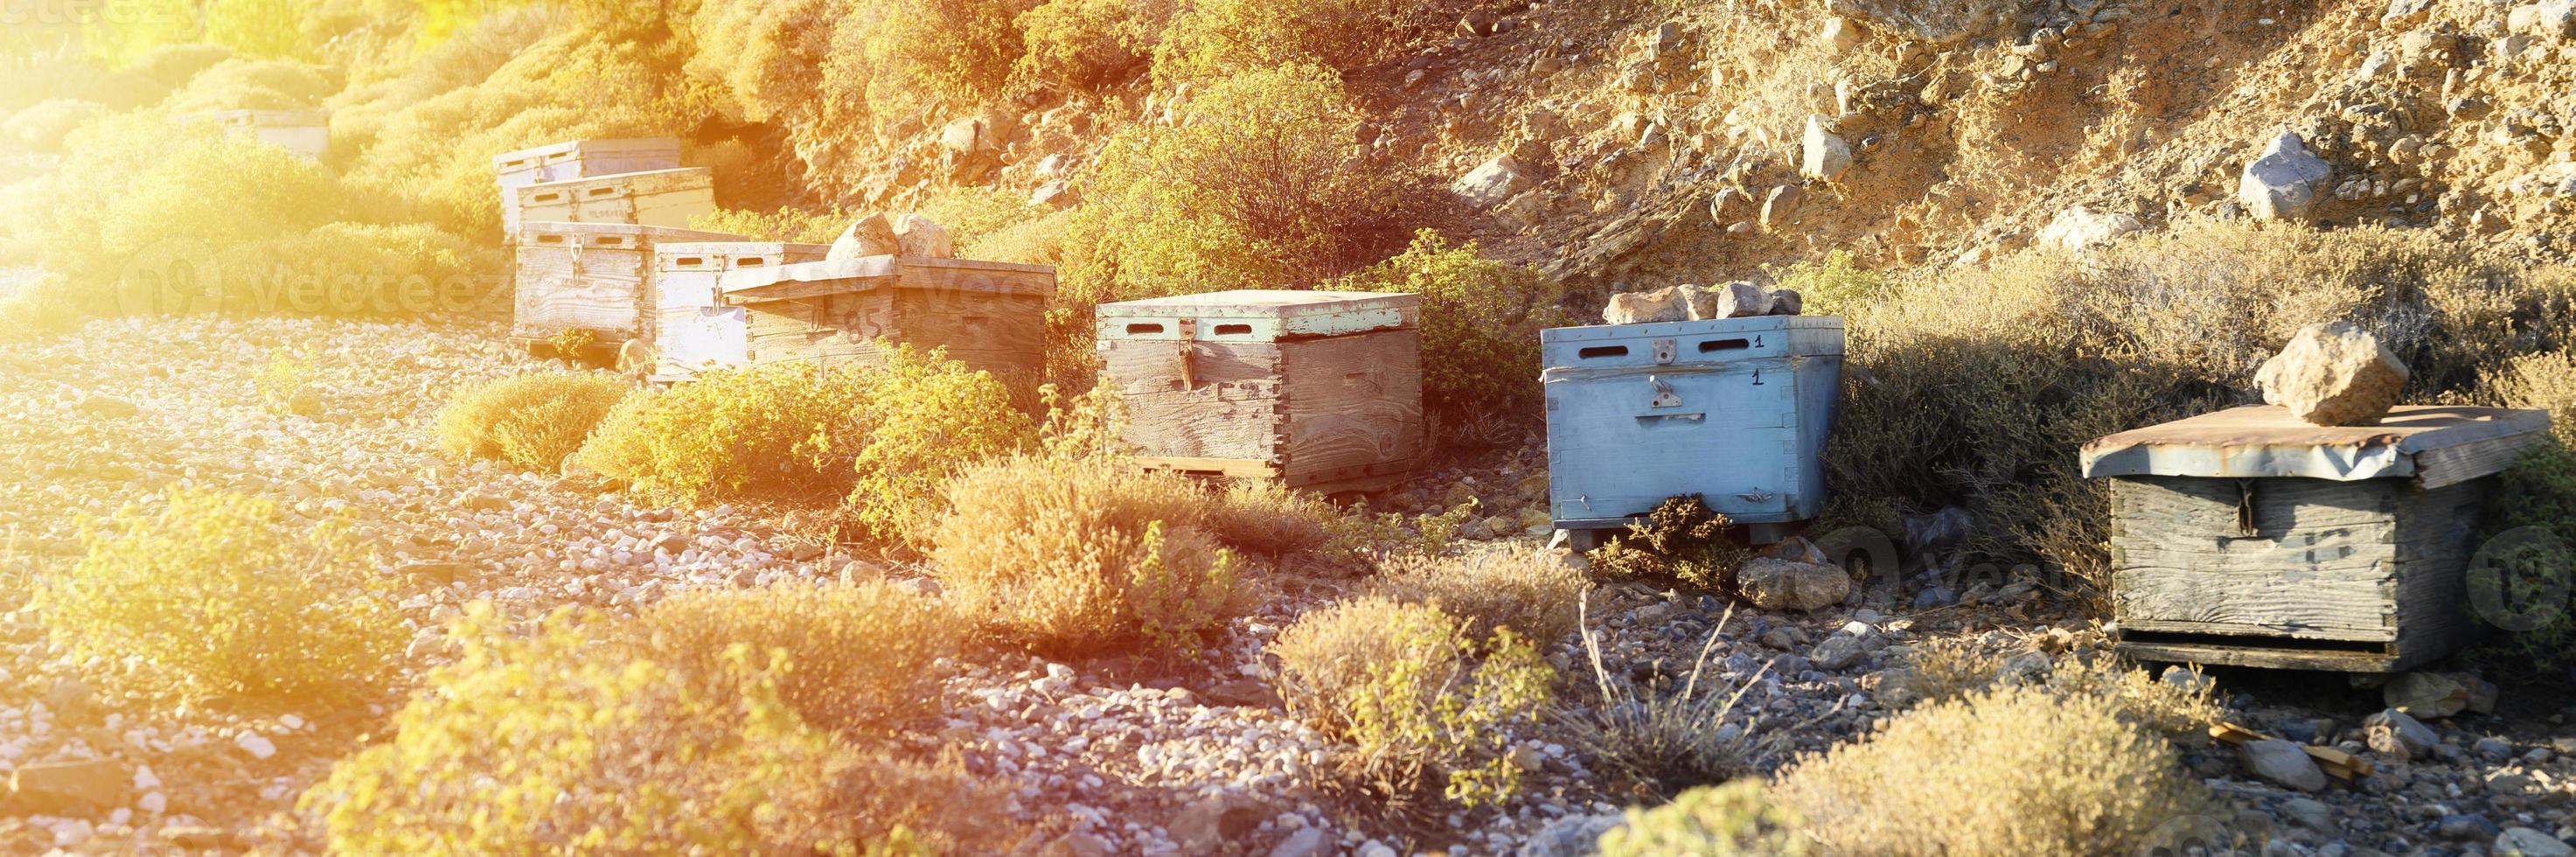 bikupor i ett bergigt område i skymningen foto